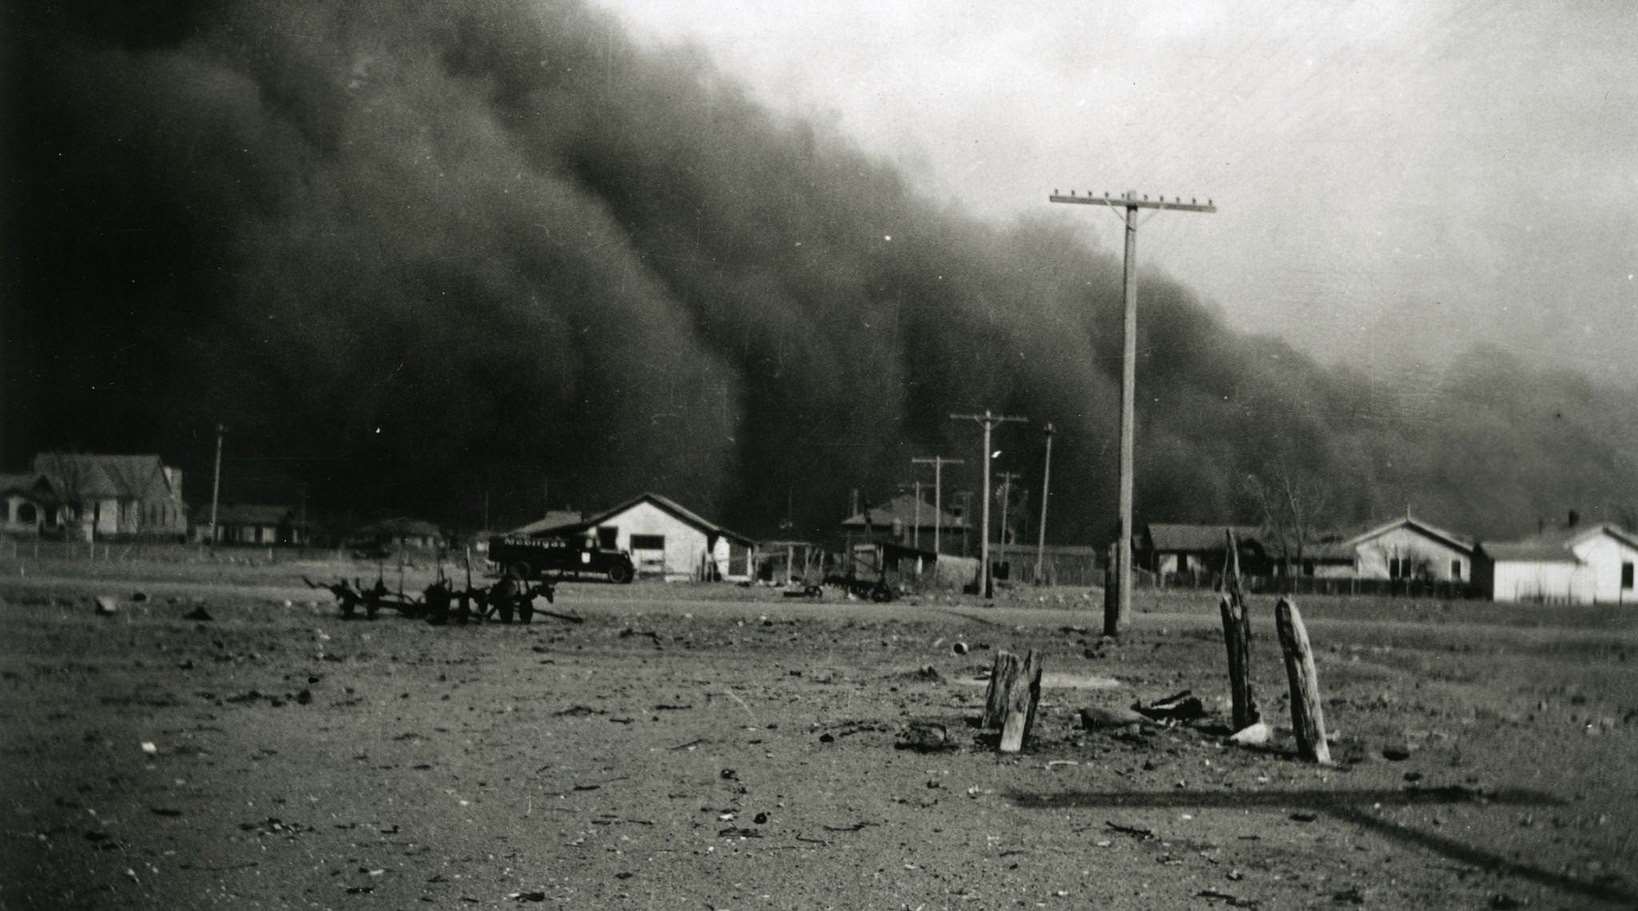 Huge dark dust clouds swarm over houses in rural Colorado, 1930s